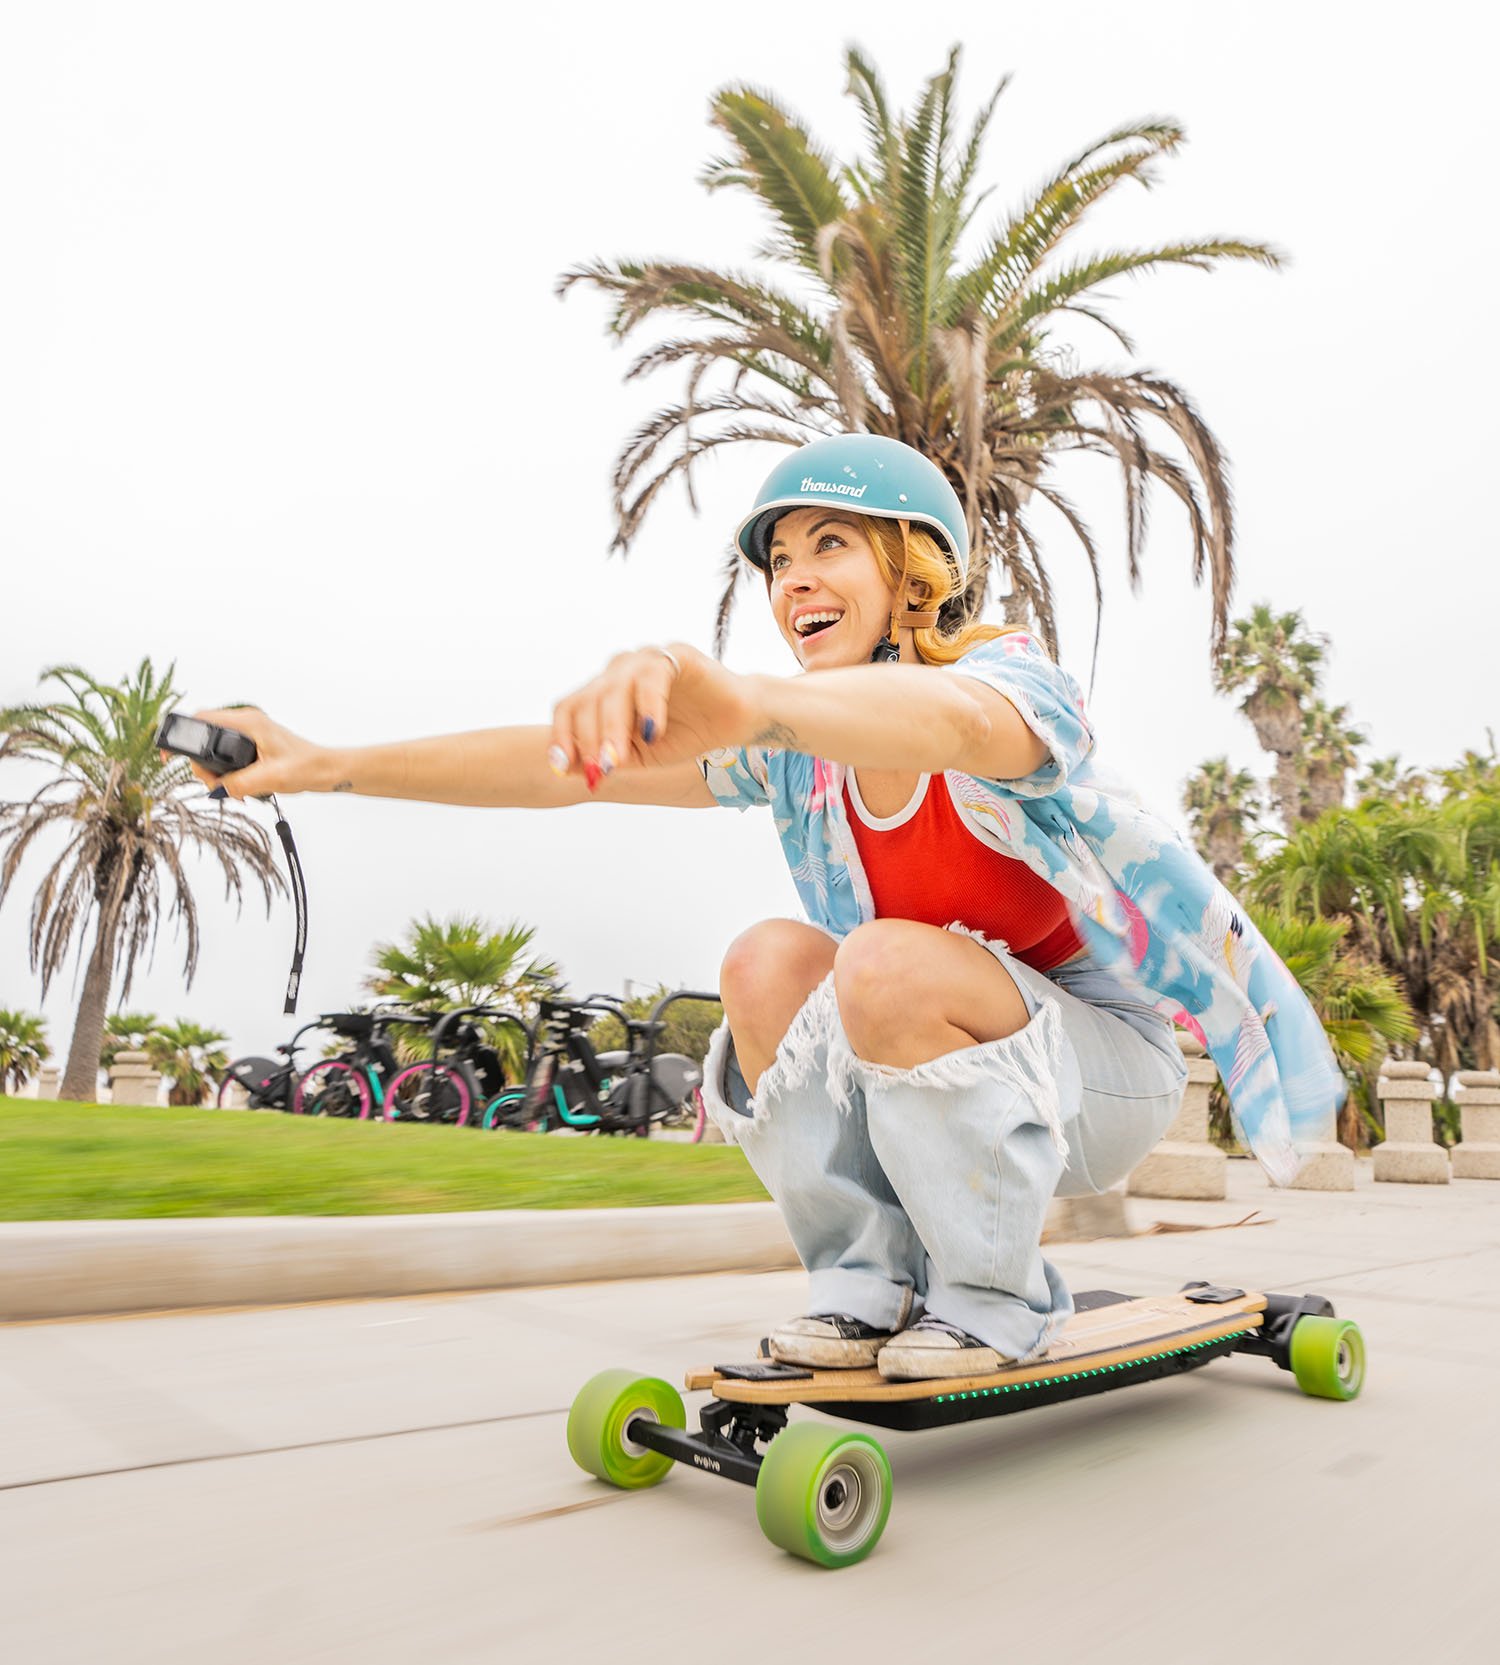 Online Street Electric Evolve Evolve Shop Skateboards | Skateboards USA Skateboards –